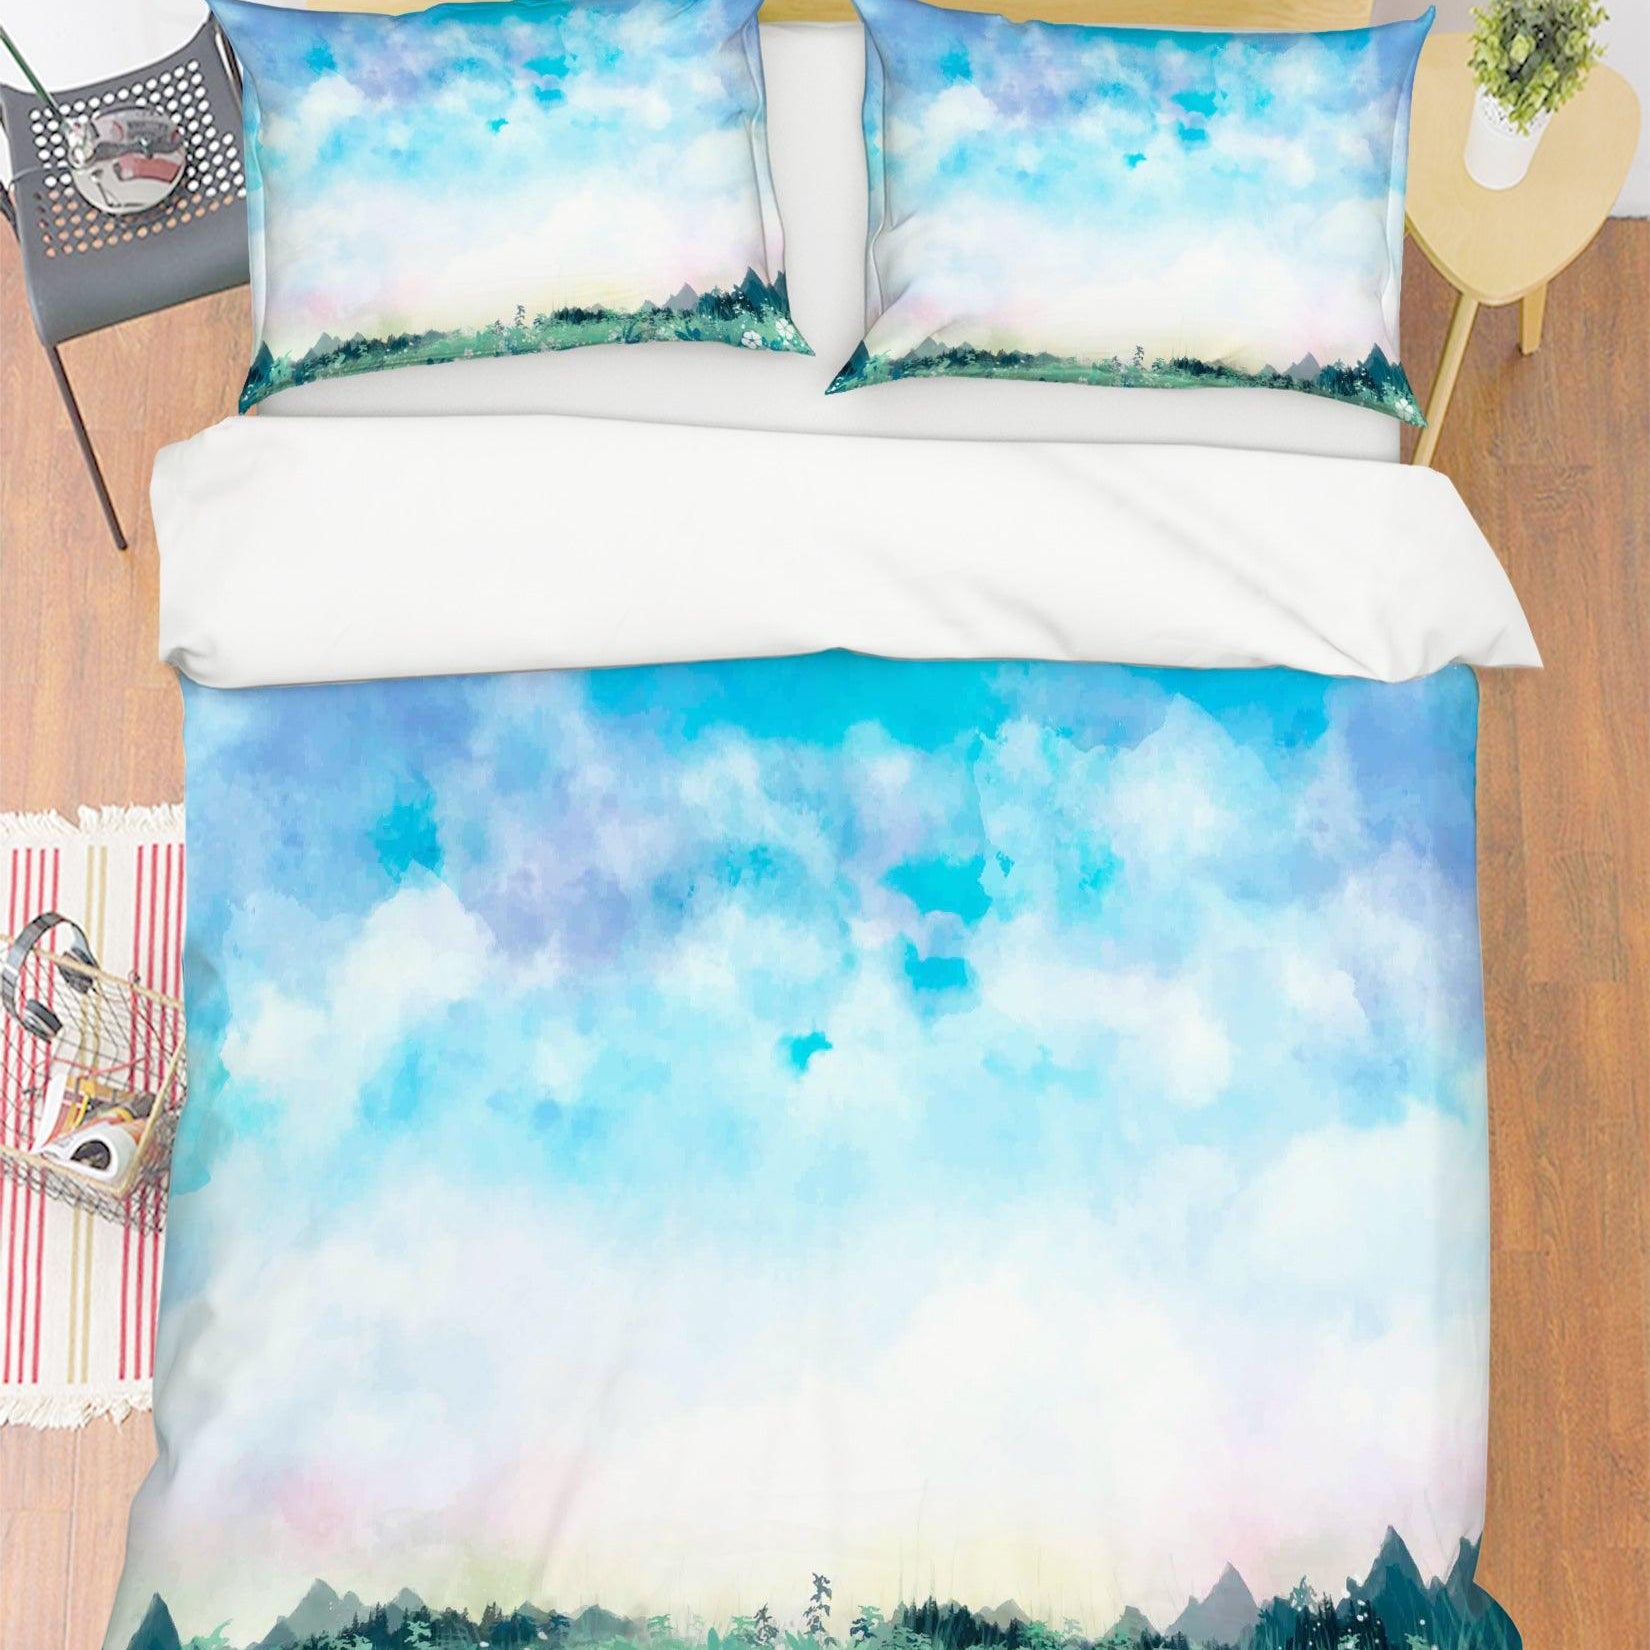 3D Watercolor Blue Sky Forest Quilt Cover Set Bedding Set Pillowcases 30- Jess Art Decoration